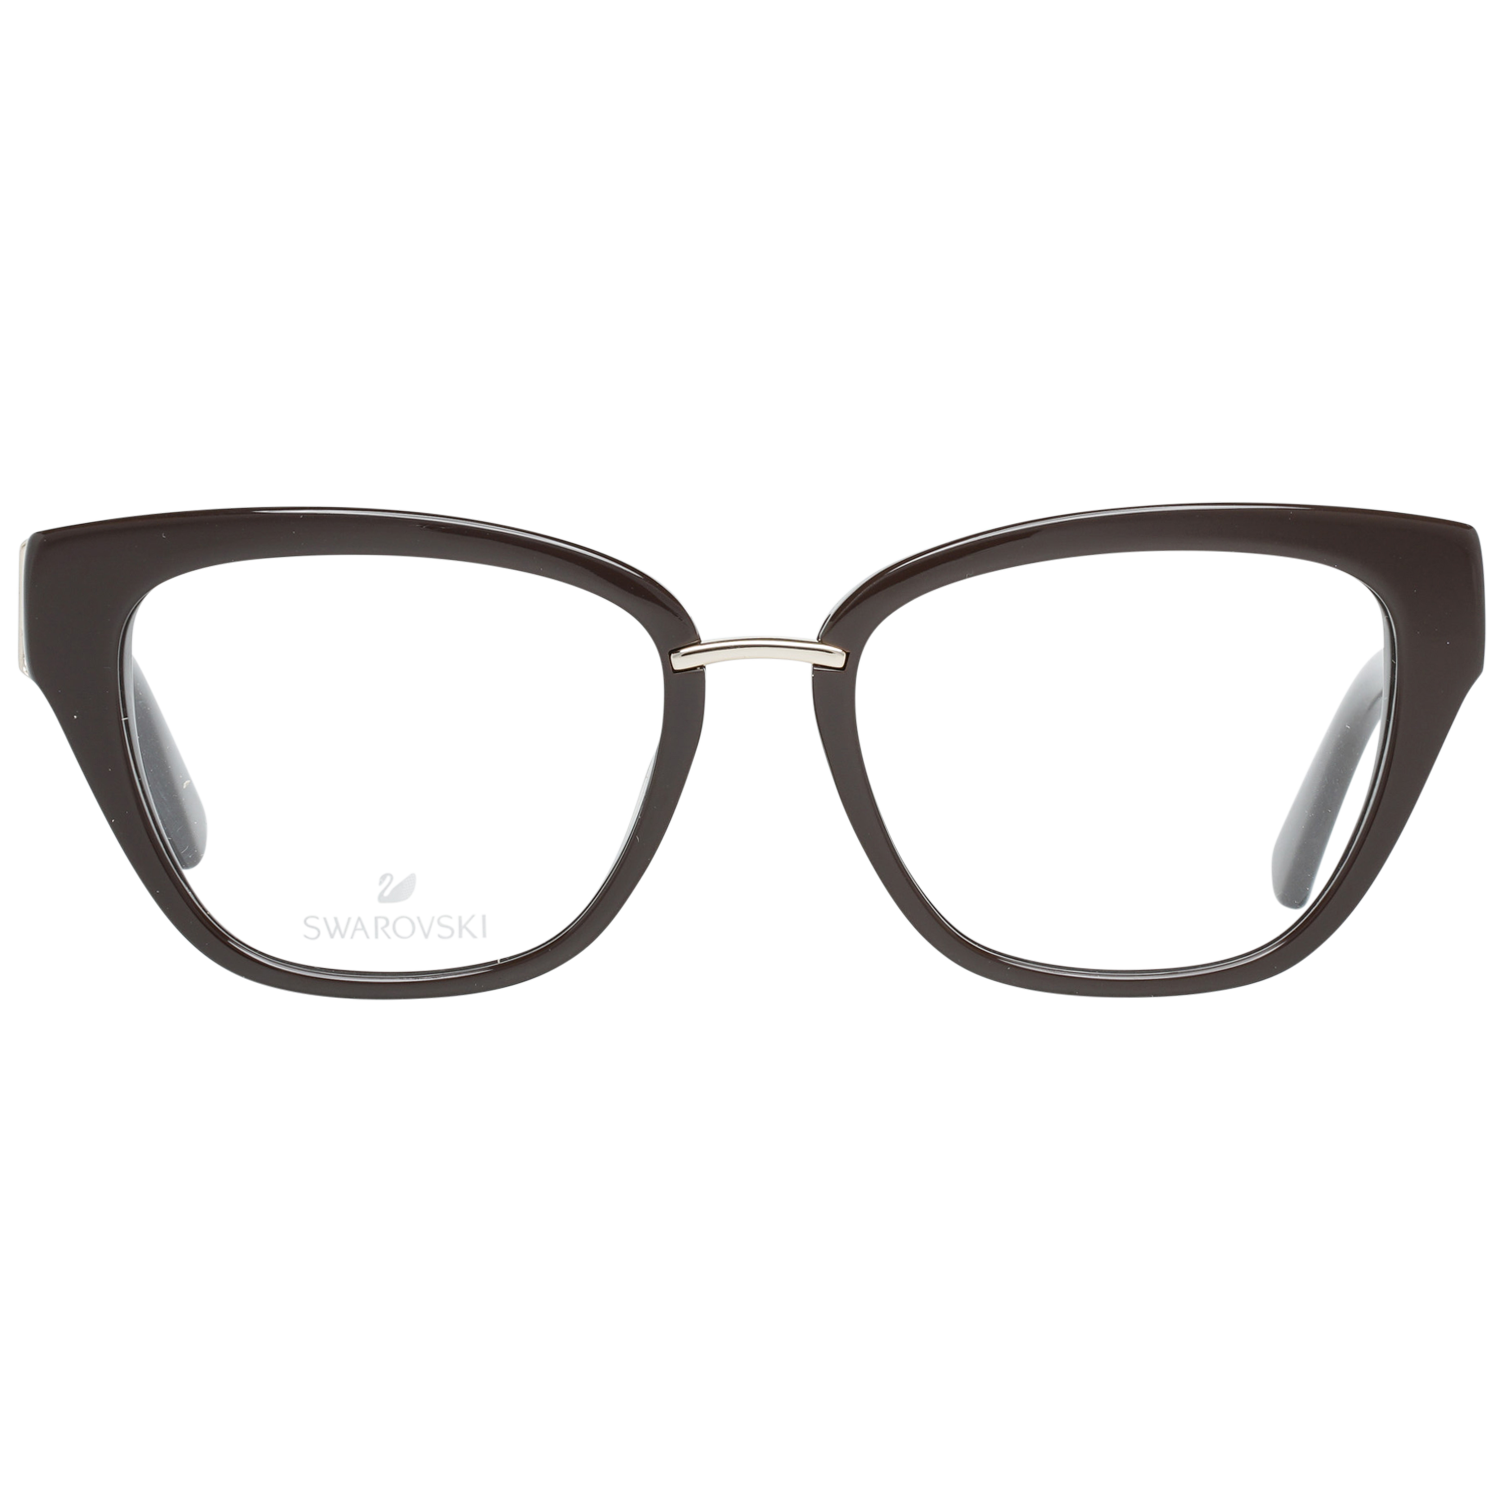 Swarovski Frames Swarovski Women Glasses Optical Frame SK5251 052 50 Eyeglasses Eyewear UK USA Australia 